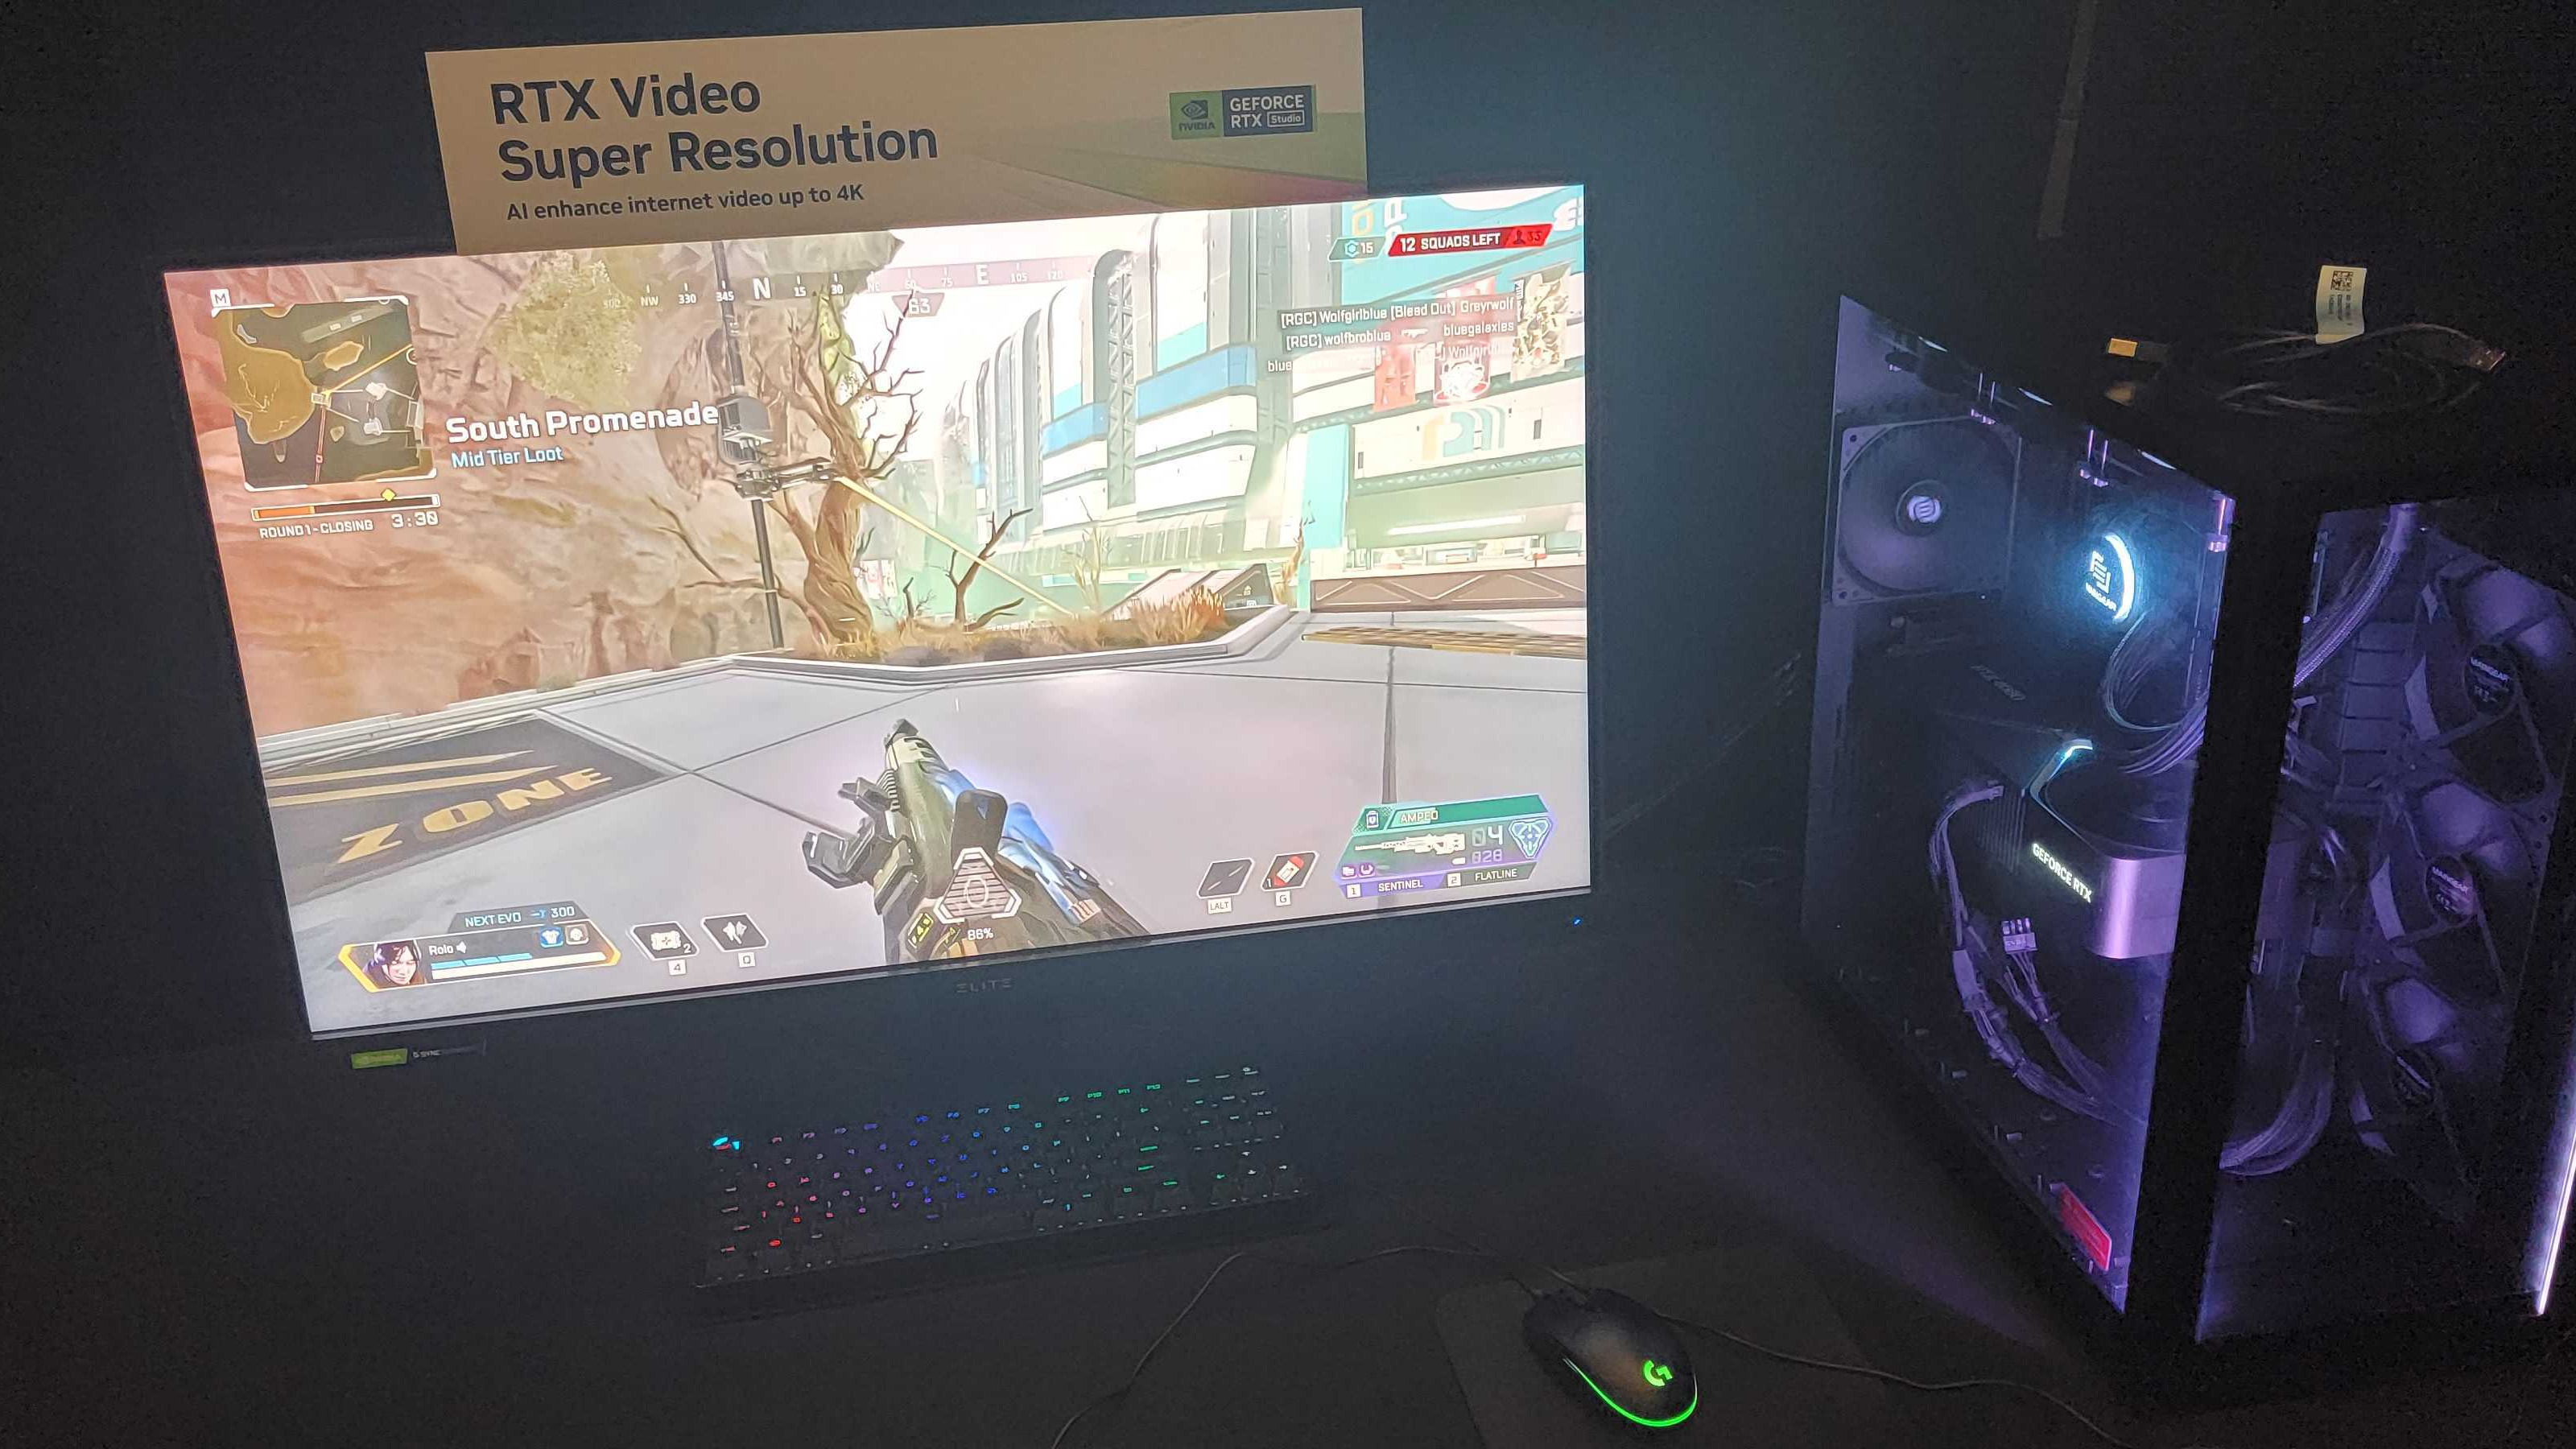 Nvidia RTX Video Super Resolution Demo